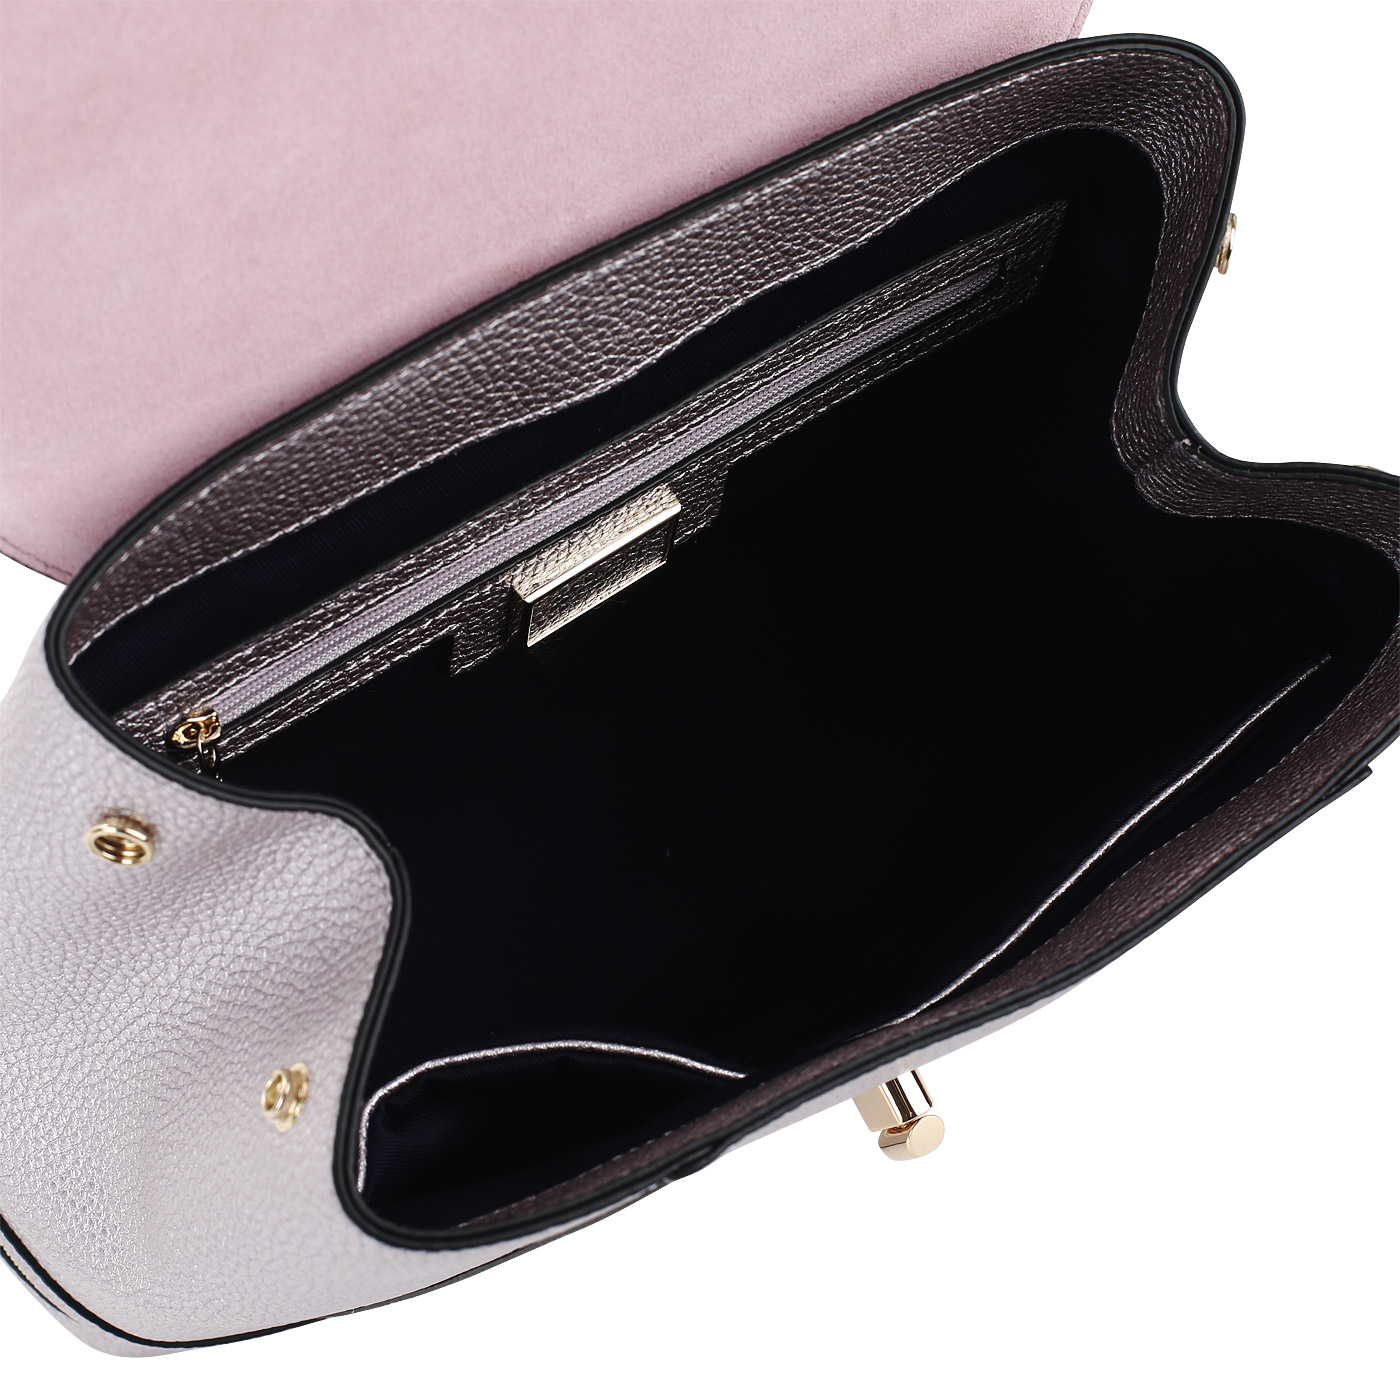 Кожаный рюкзак со съемными лямками Cromia Mina